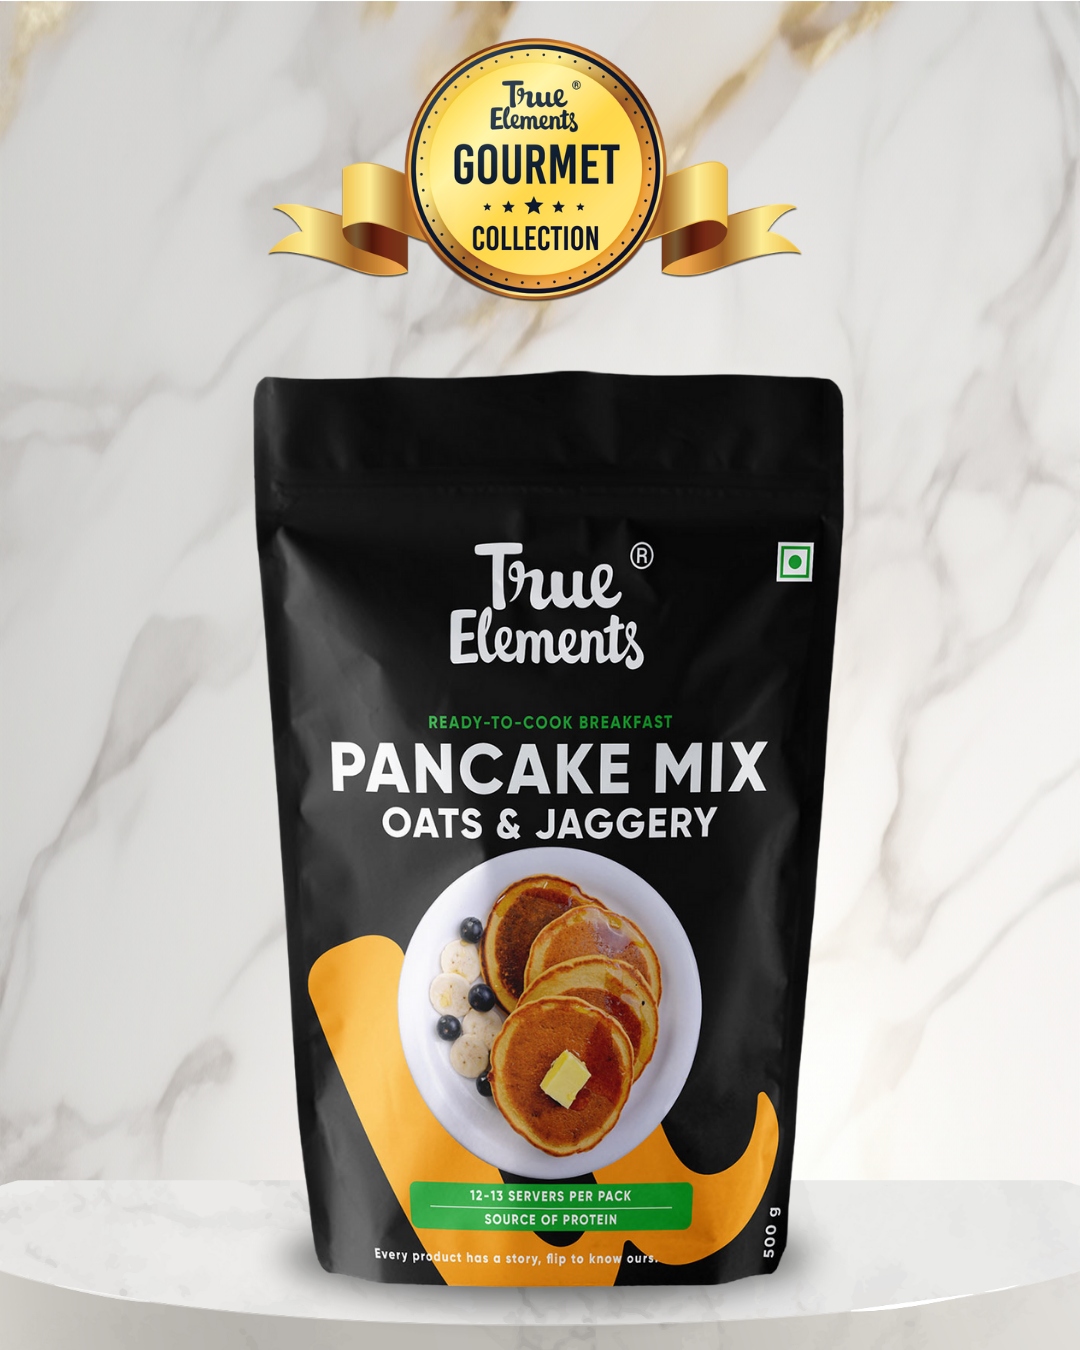 Pancake Mix 500g